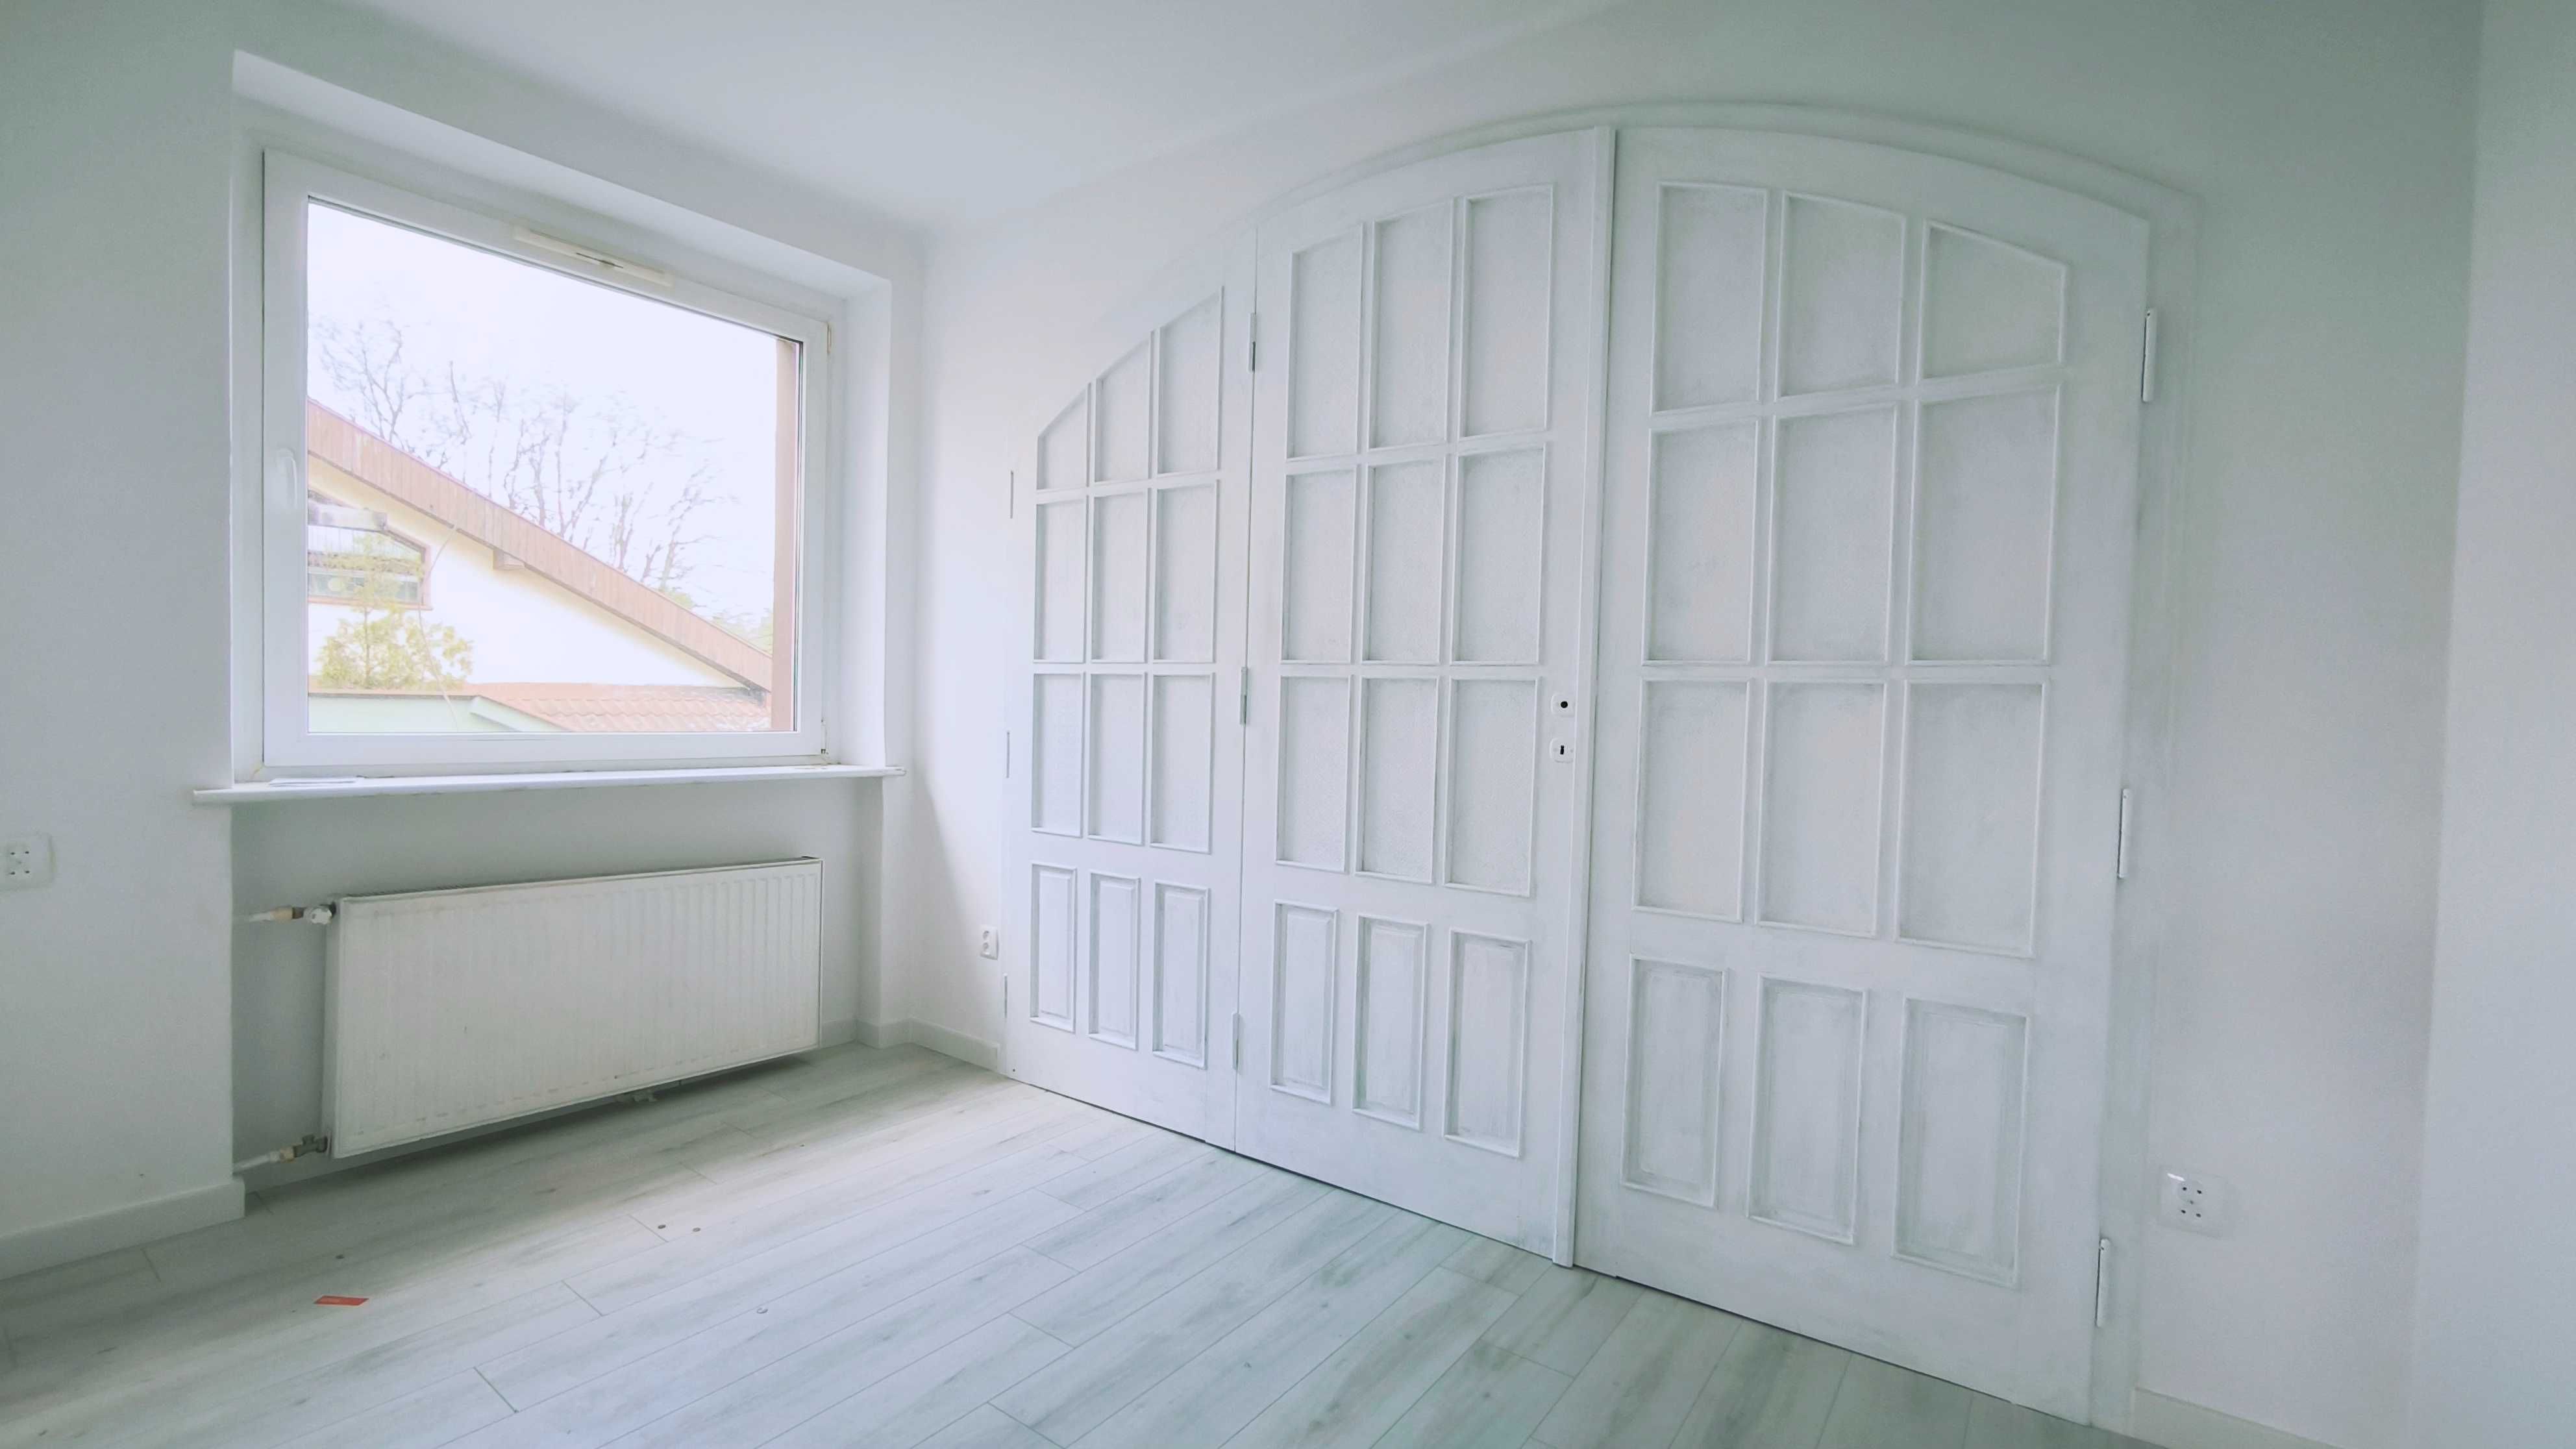 100 m2, 4 pokoje -  Antoninek  - Mieszkanie po kapitalnym remoncie